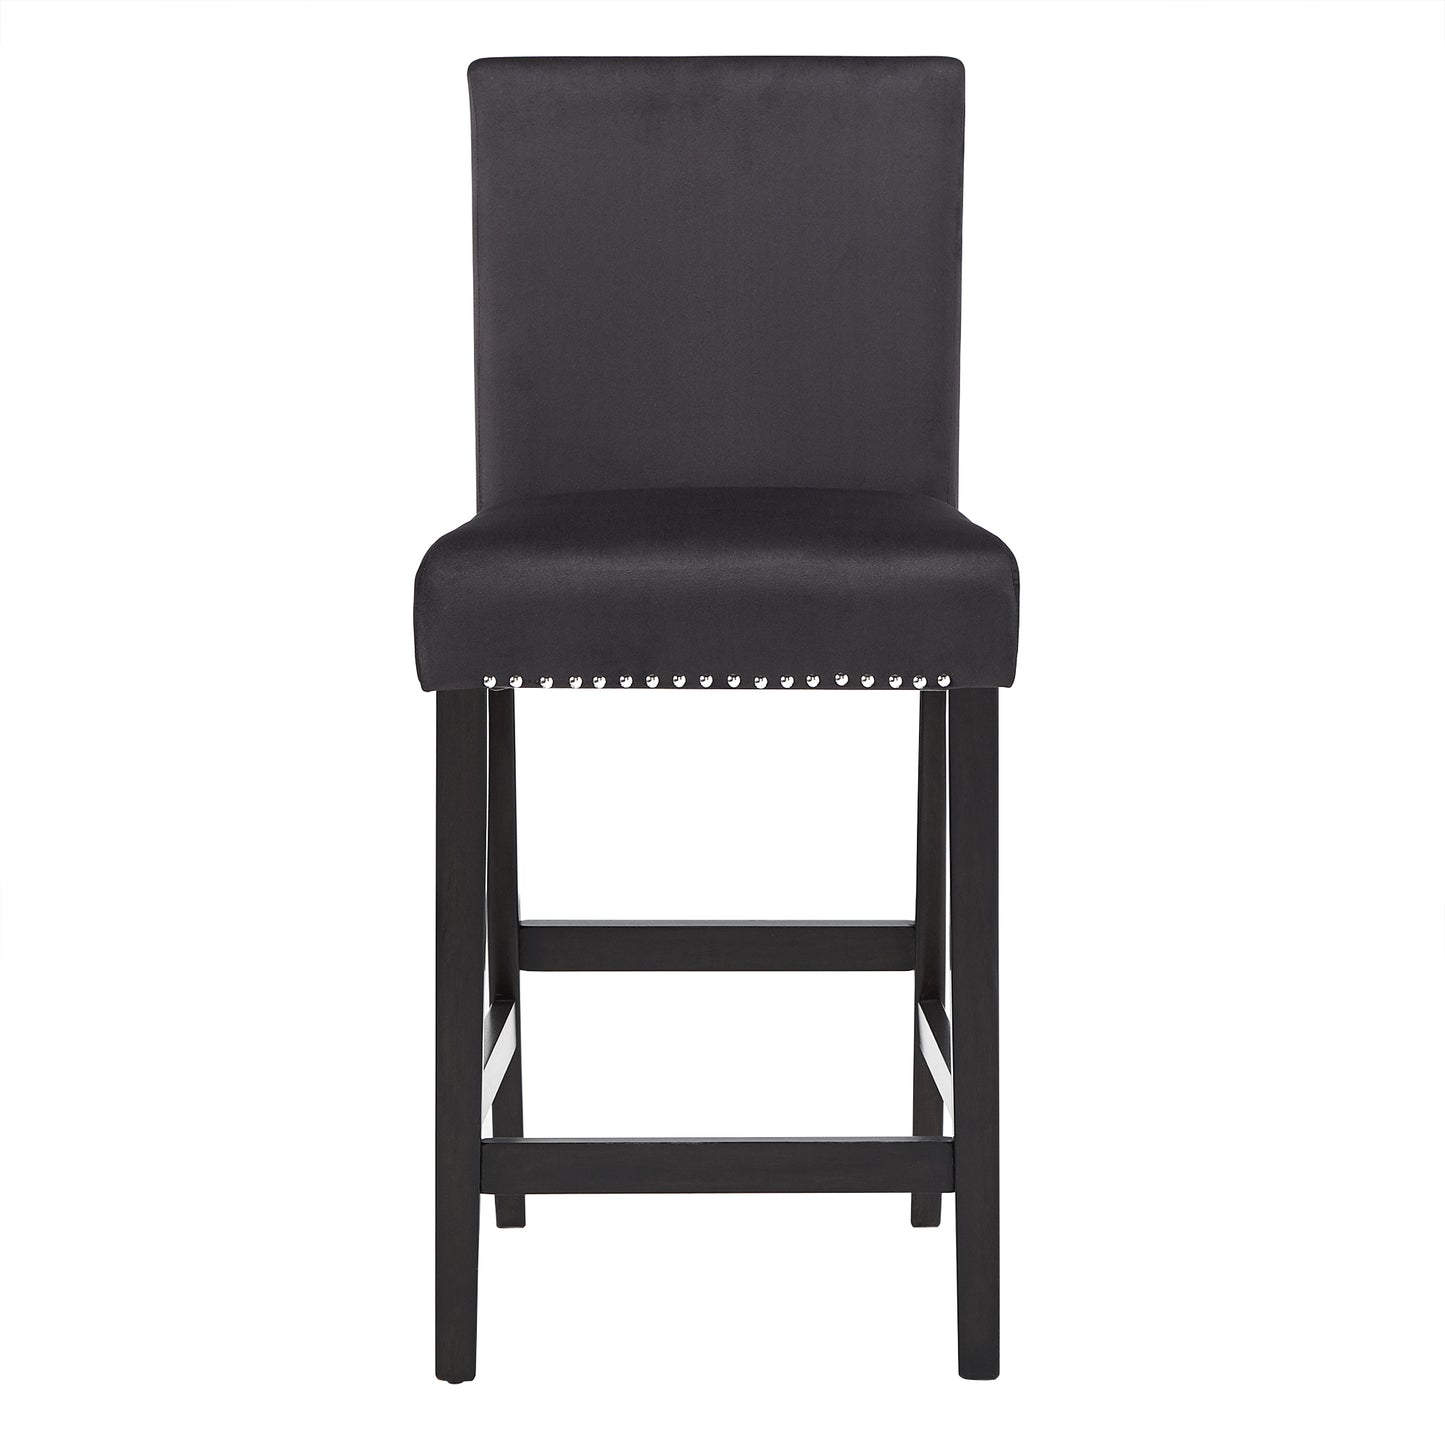 Nailhead Velvet Upholstered Chairs (Set of 2) - 24" Counter Height, Black